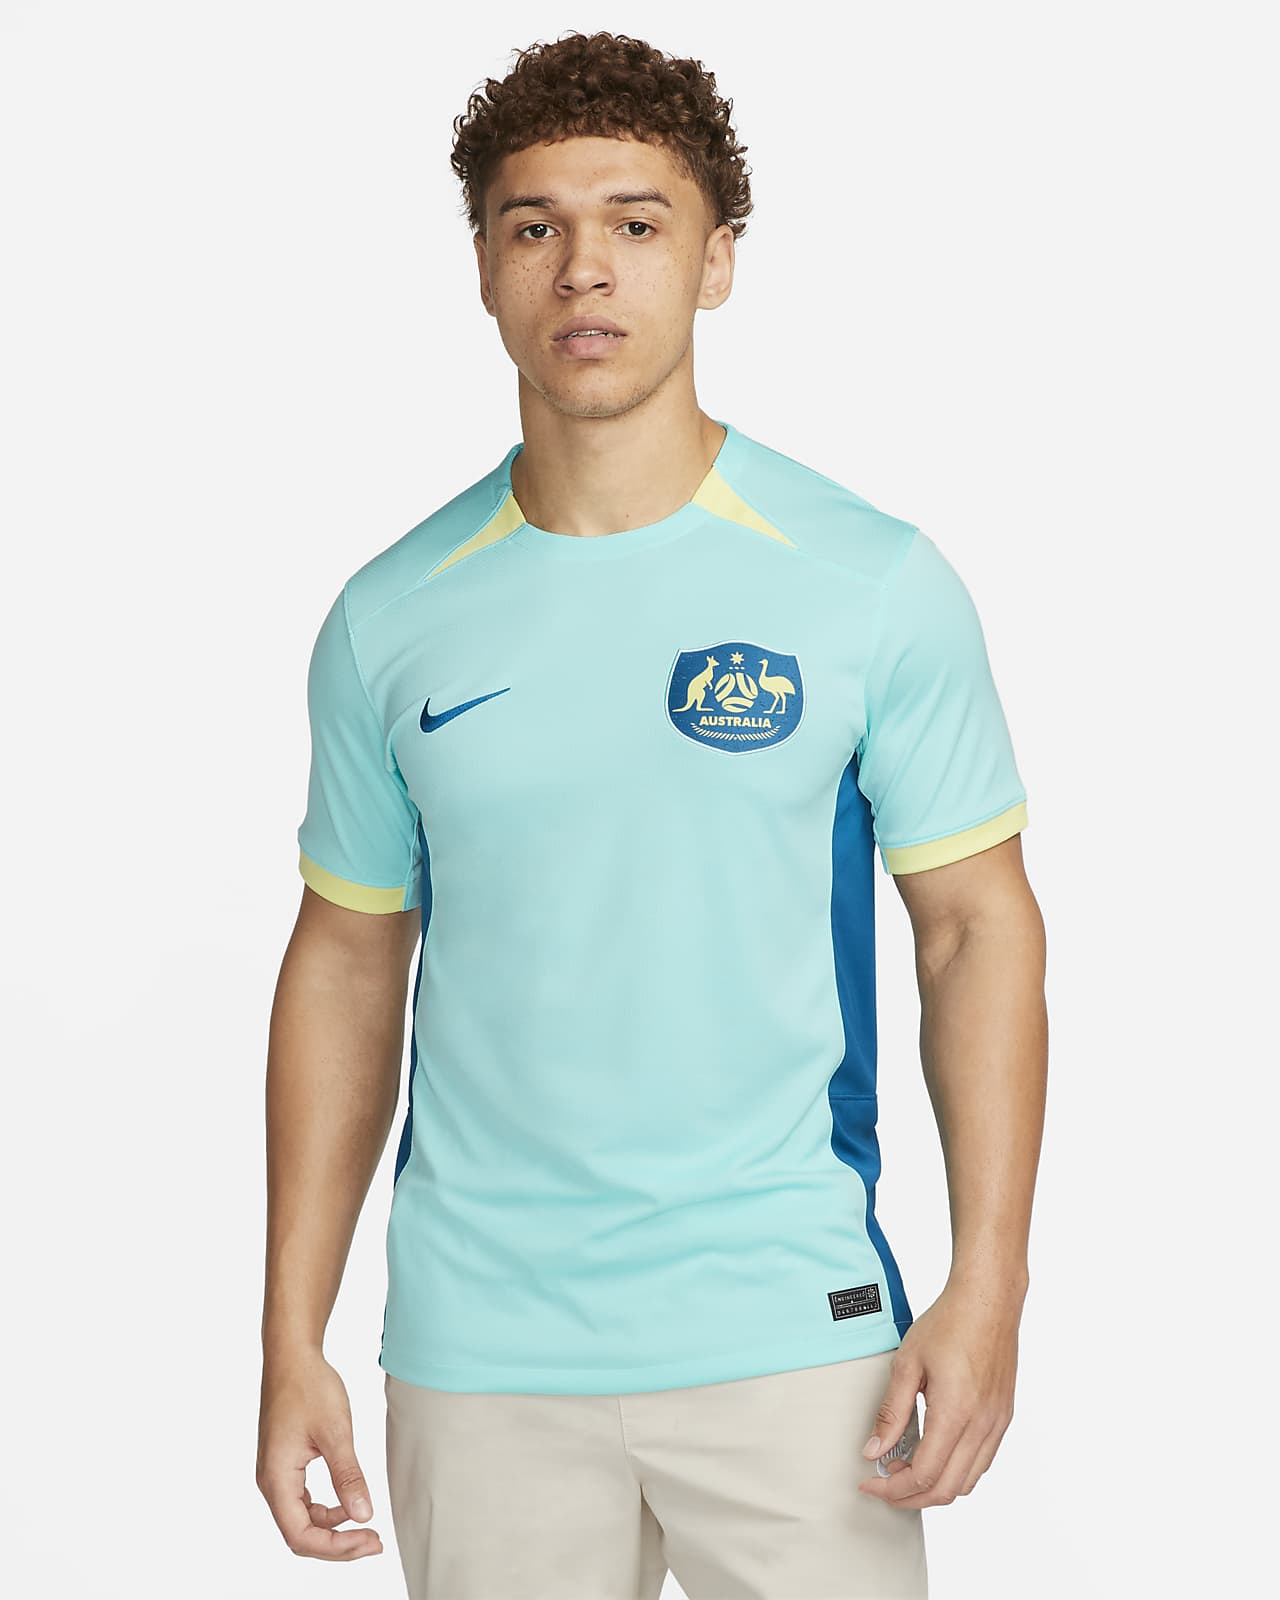 Taxpayer myg til Australien 2023 Stadium Away Nike Dri-FIT-fodboldtrøje til mænd. Nike DK